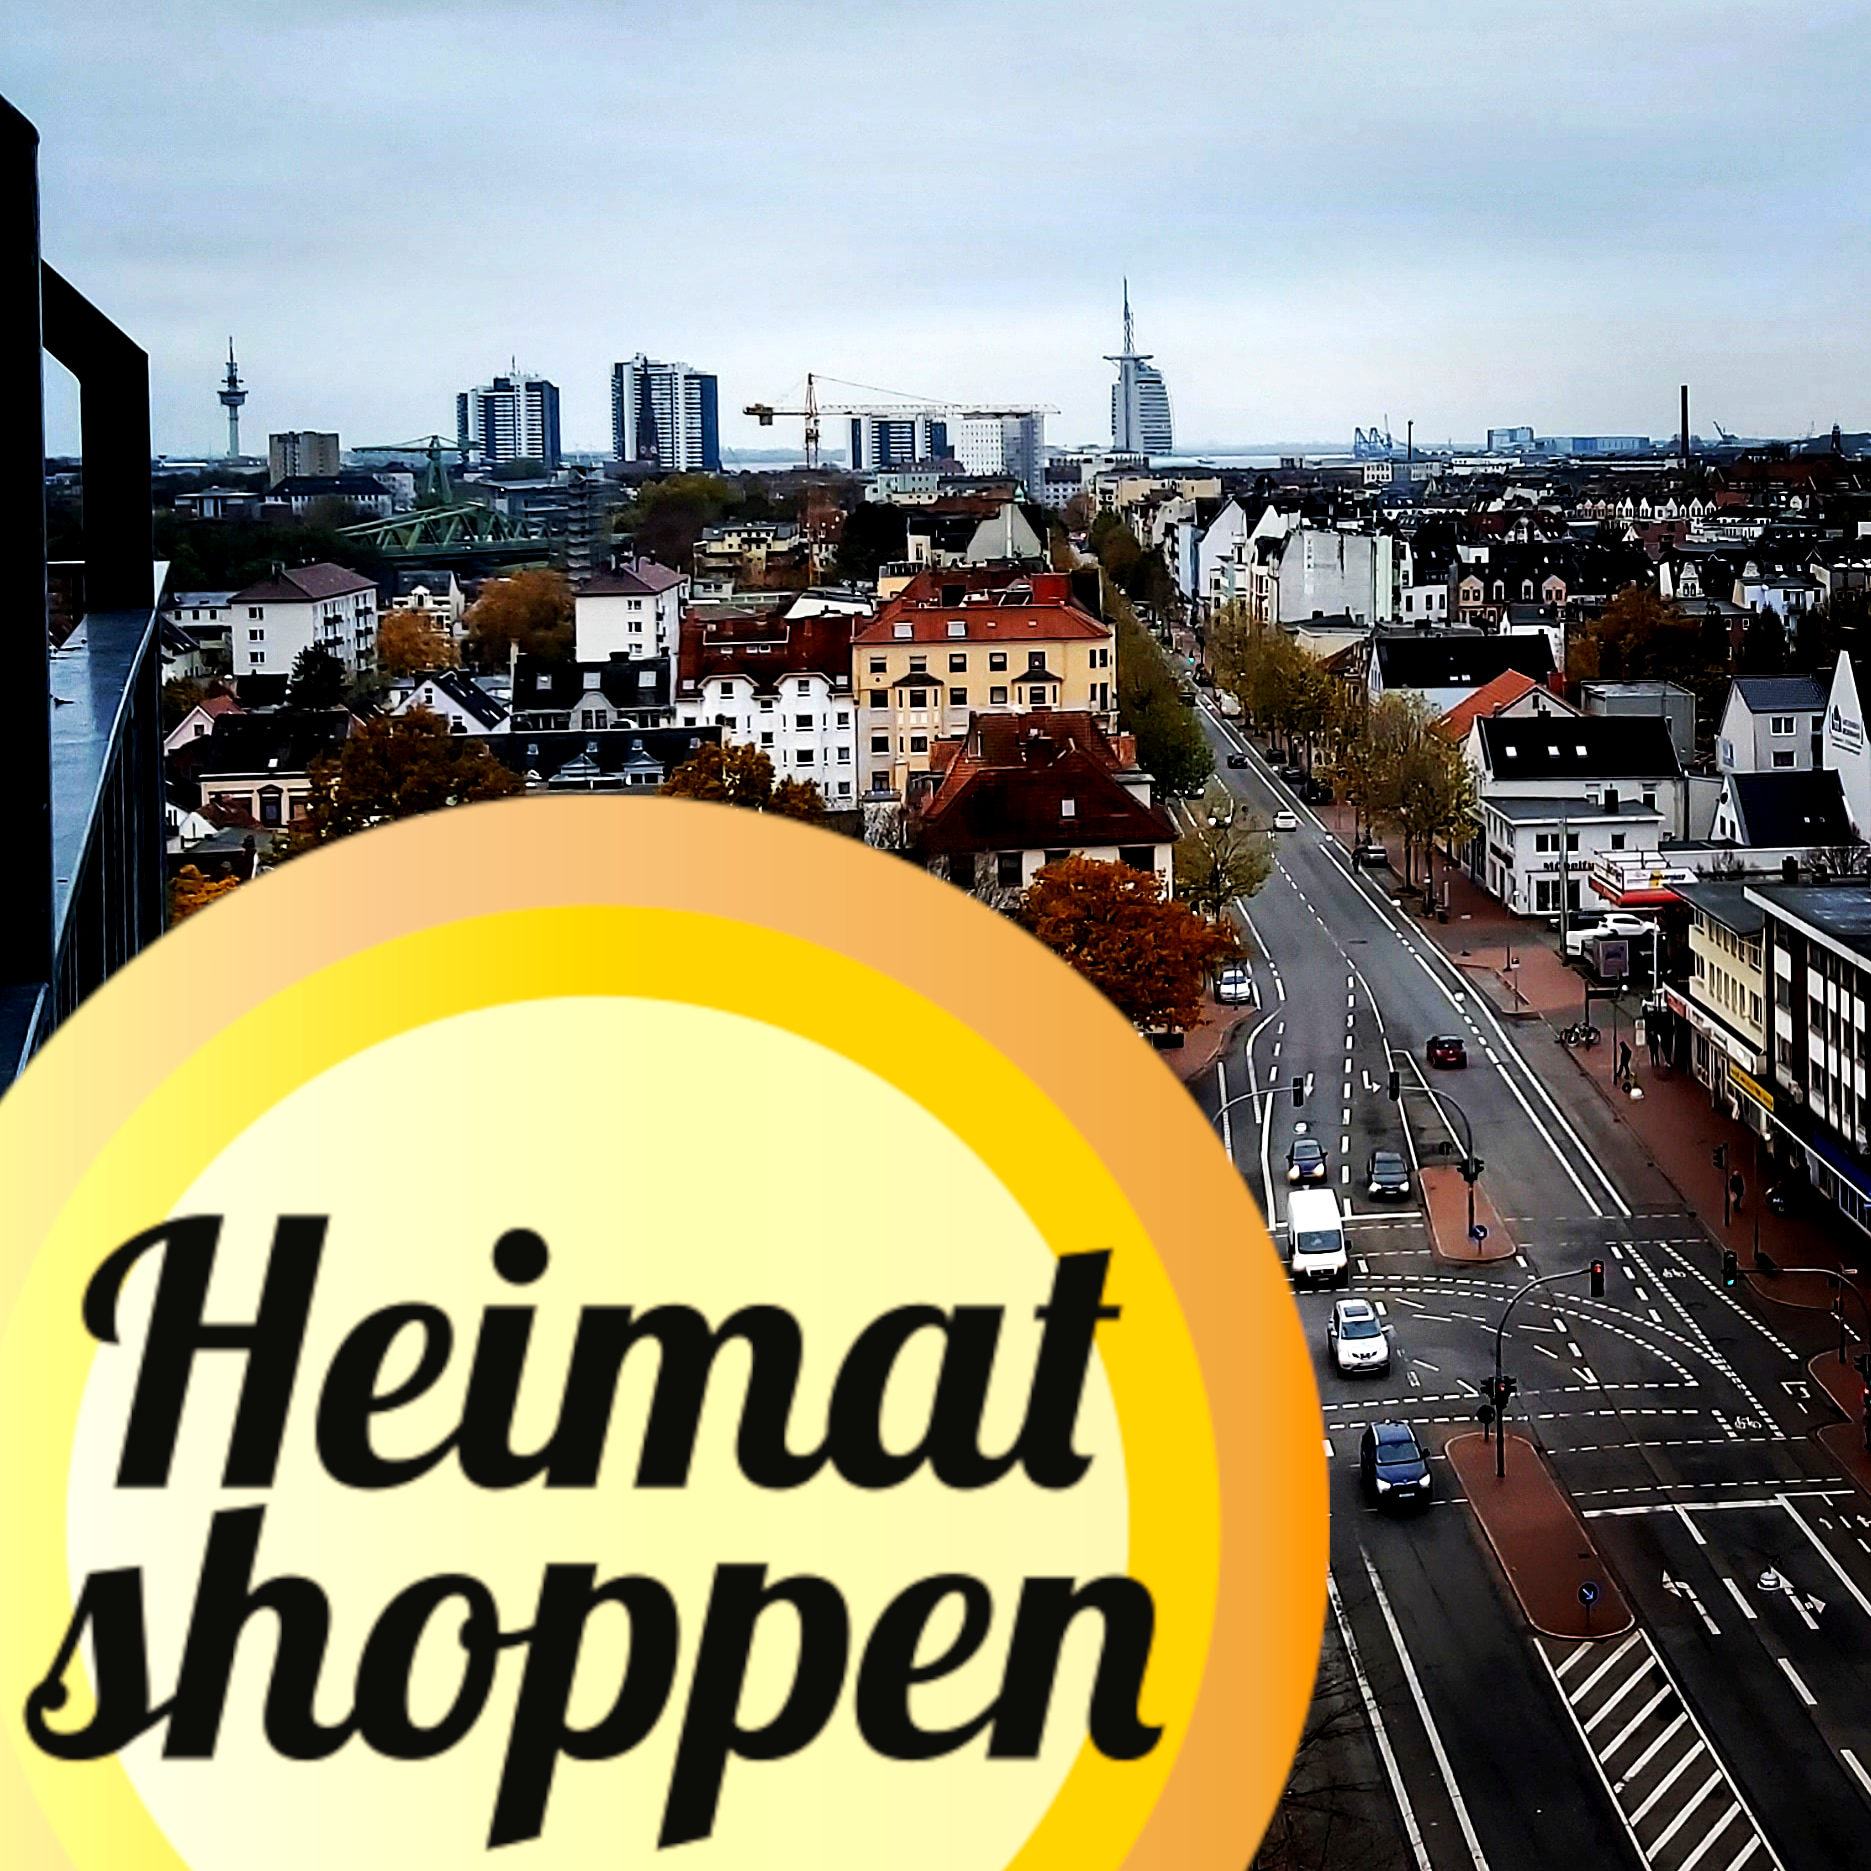 Heimat shoppen hafenstraße 2022